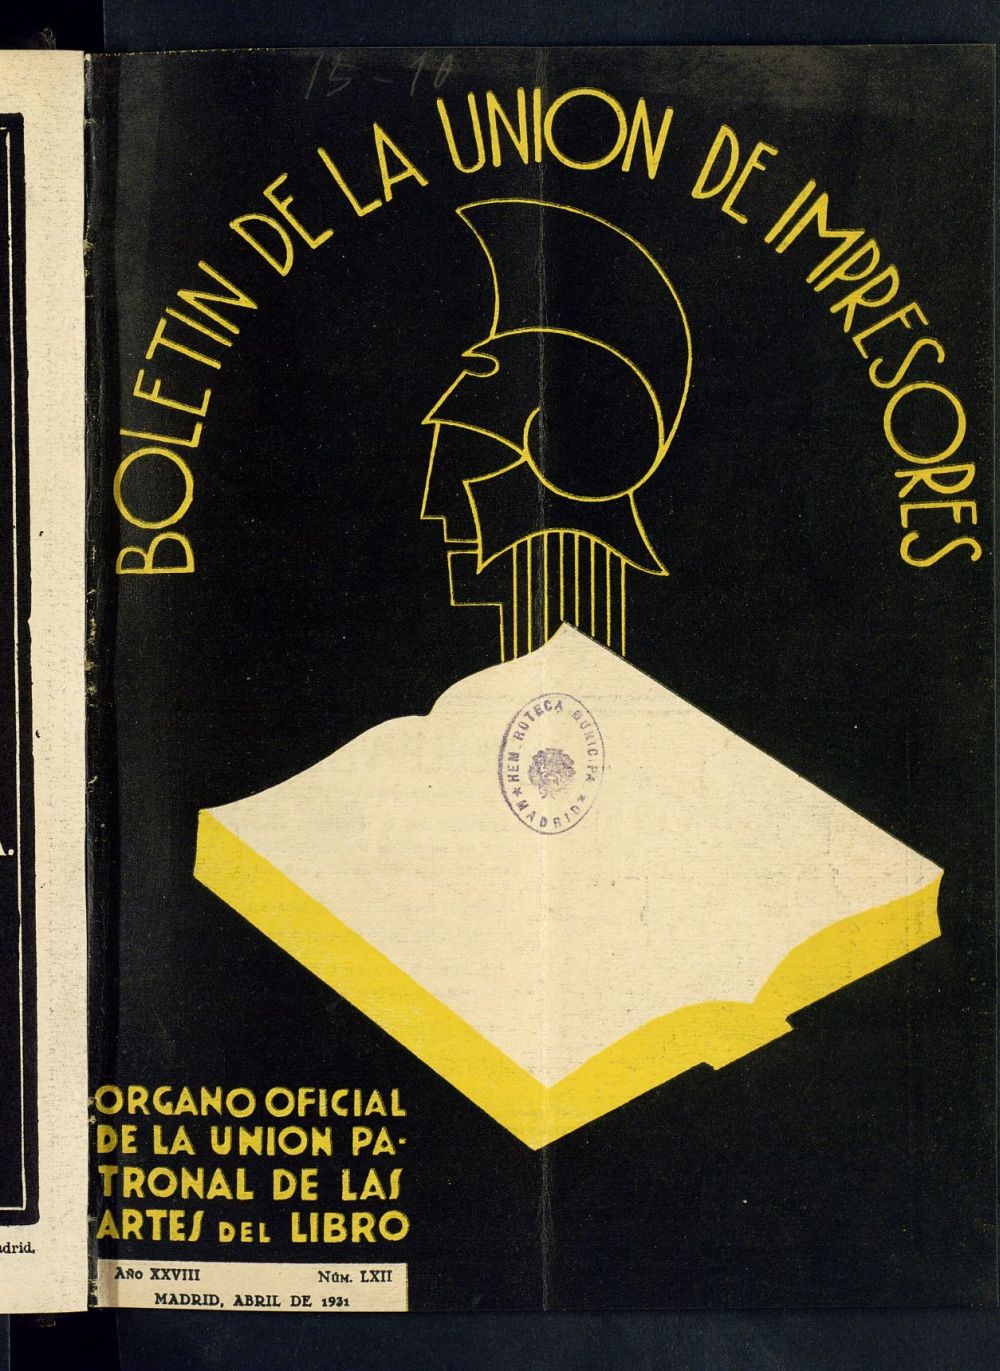 Boletn de la unin de impresores : rgano de la unin patronal de las artes del libro de abril de 1931